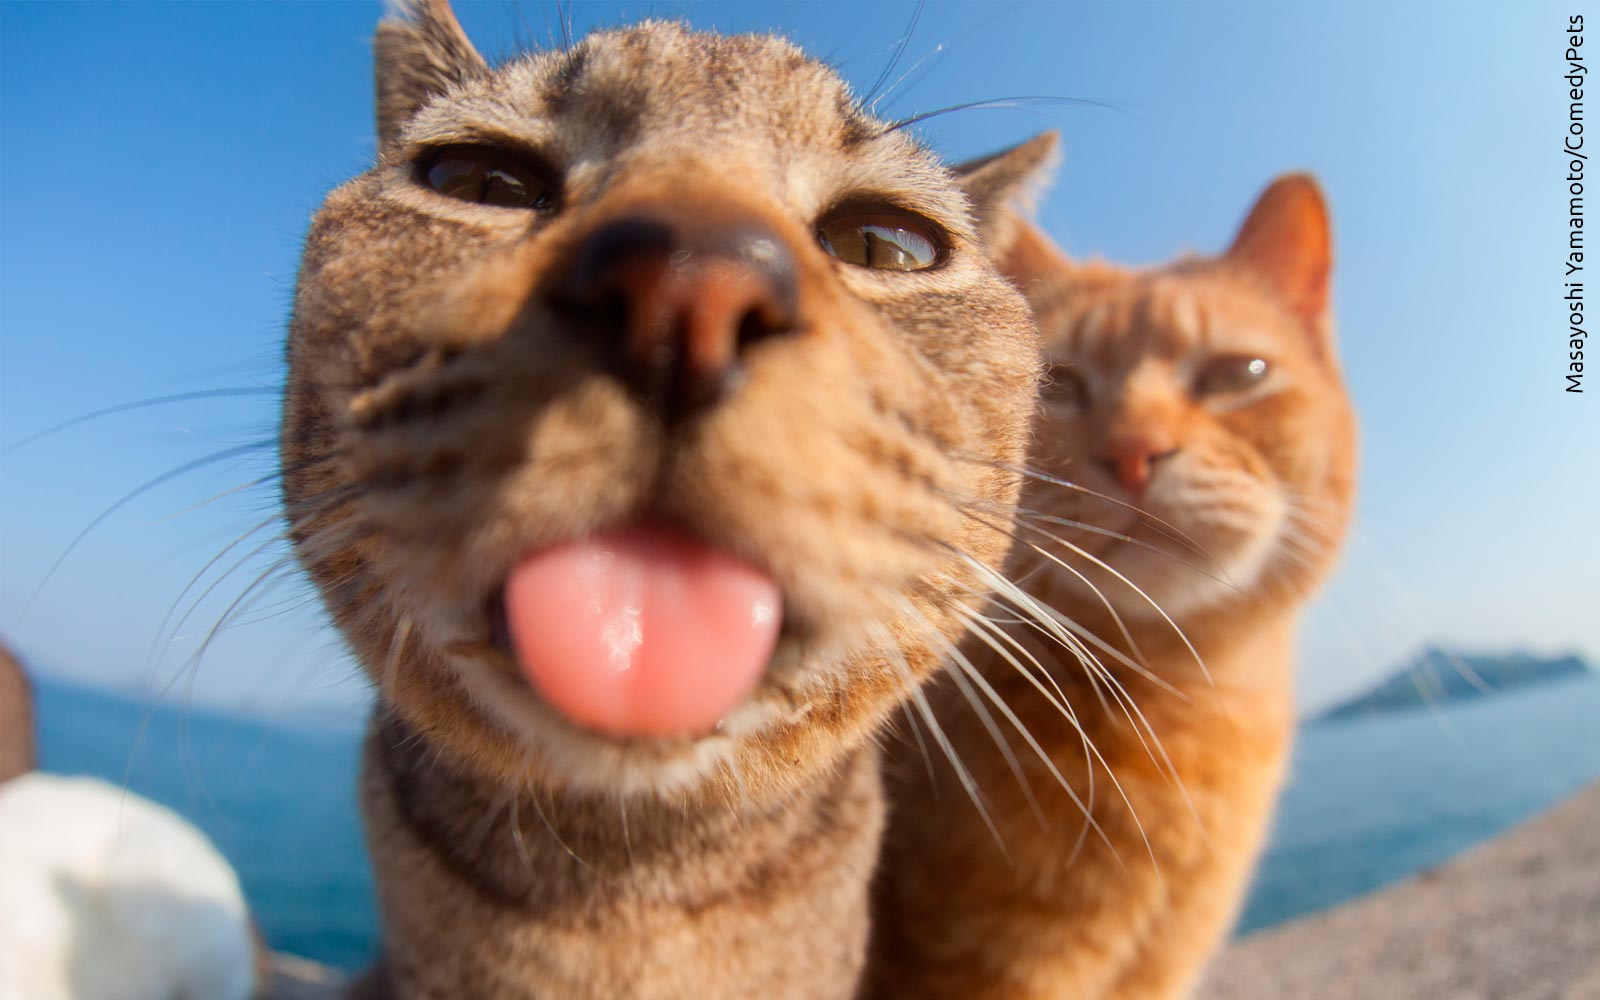 ¡Míralas todas!: Curioso concurso premia las fotos graciosas de gatos, perros y otras mascotas